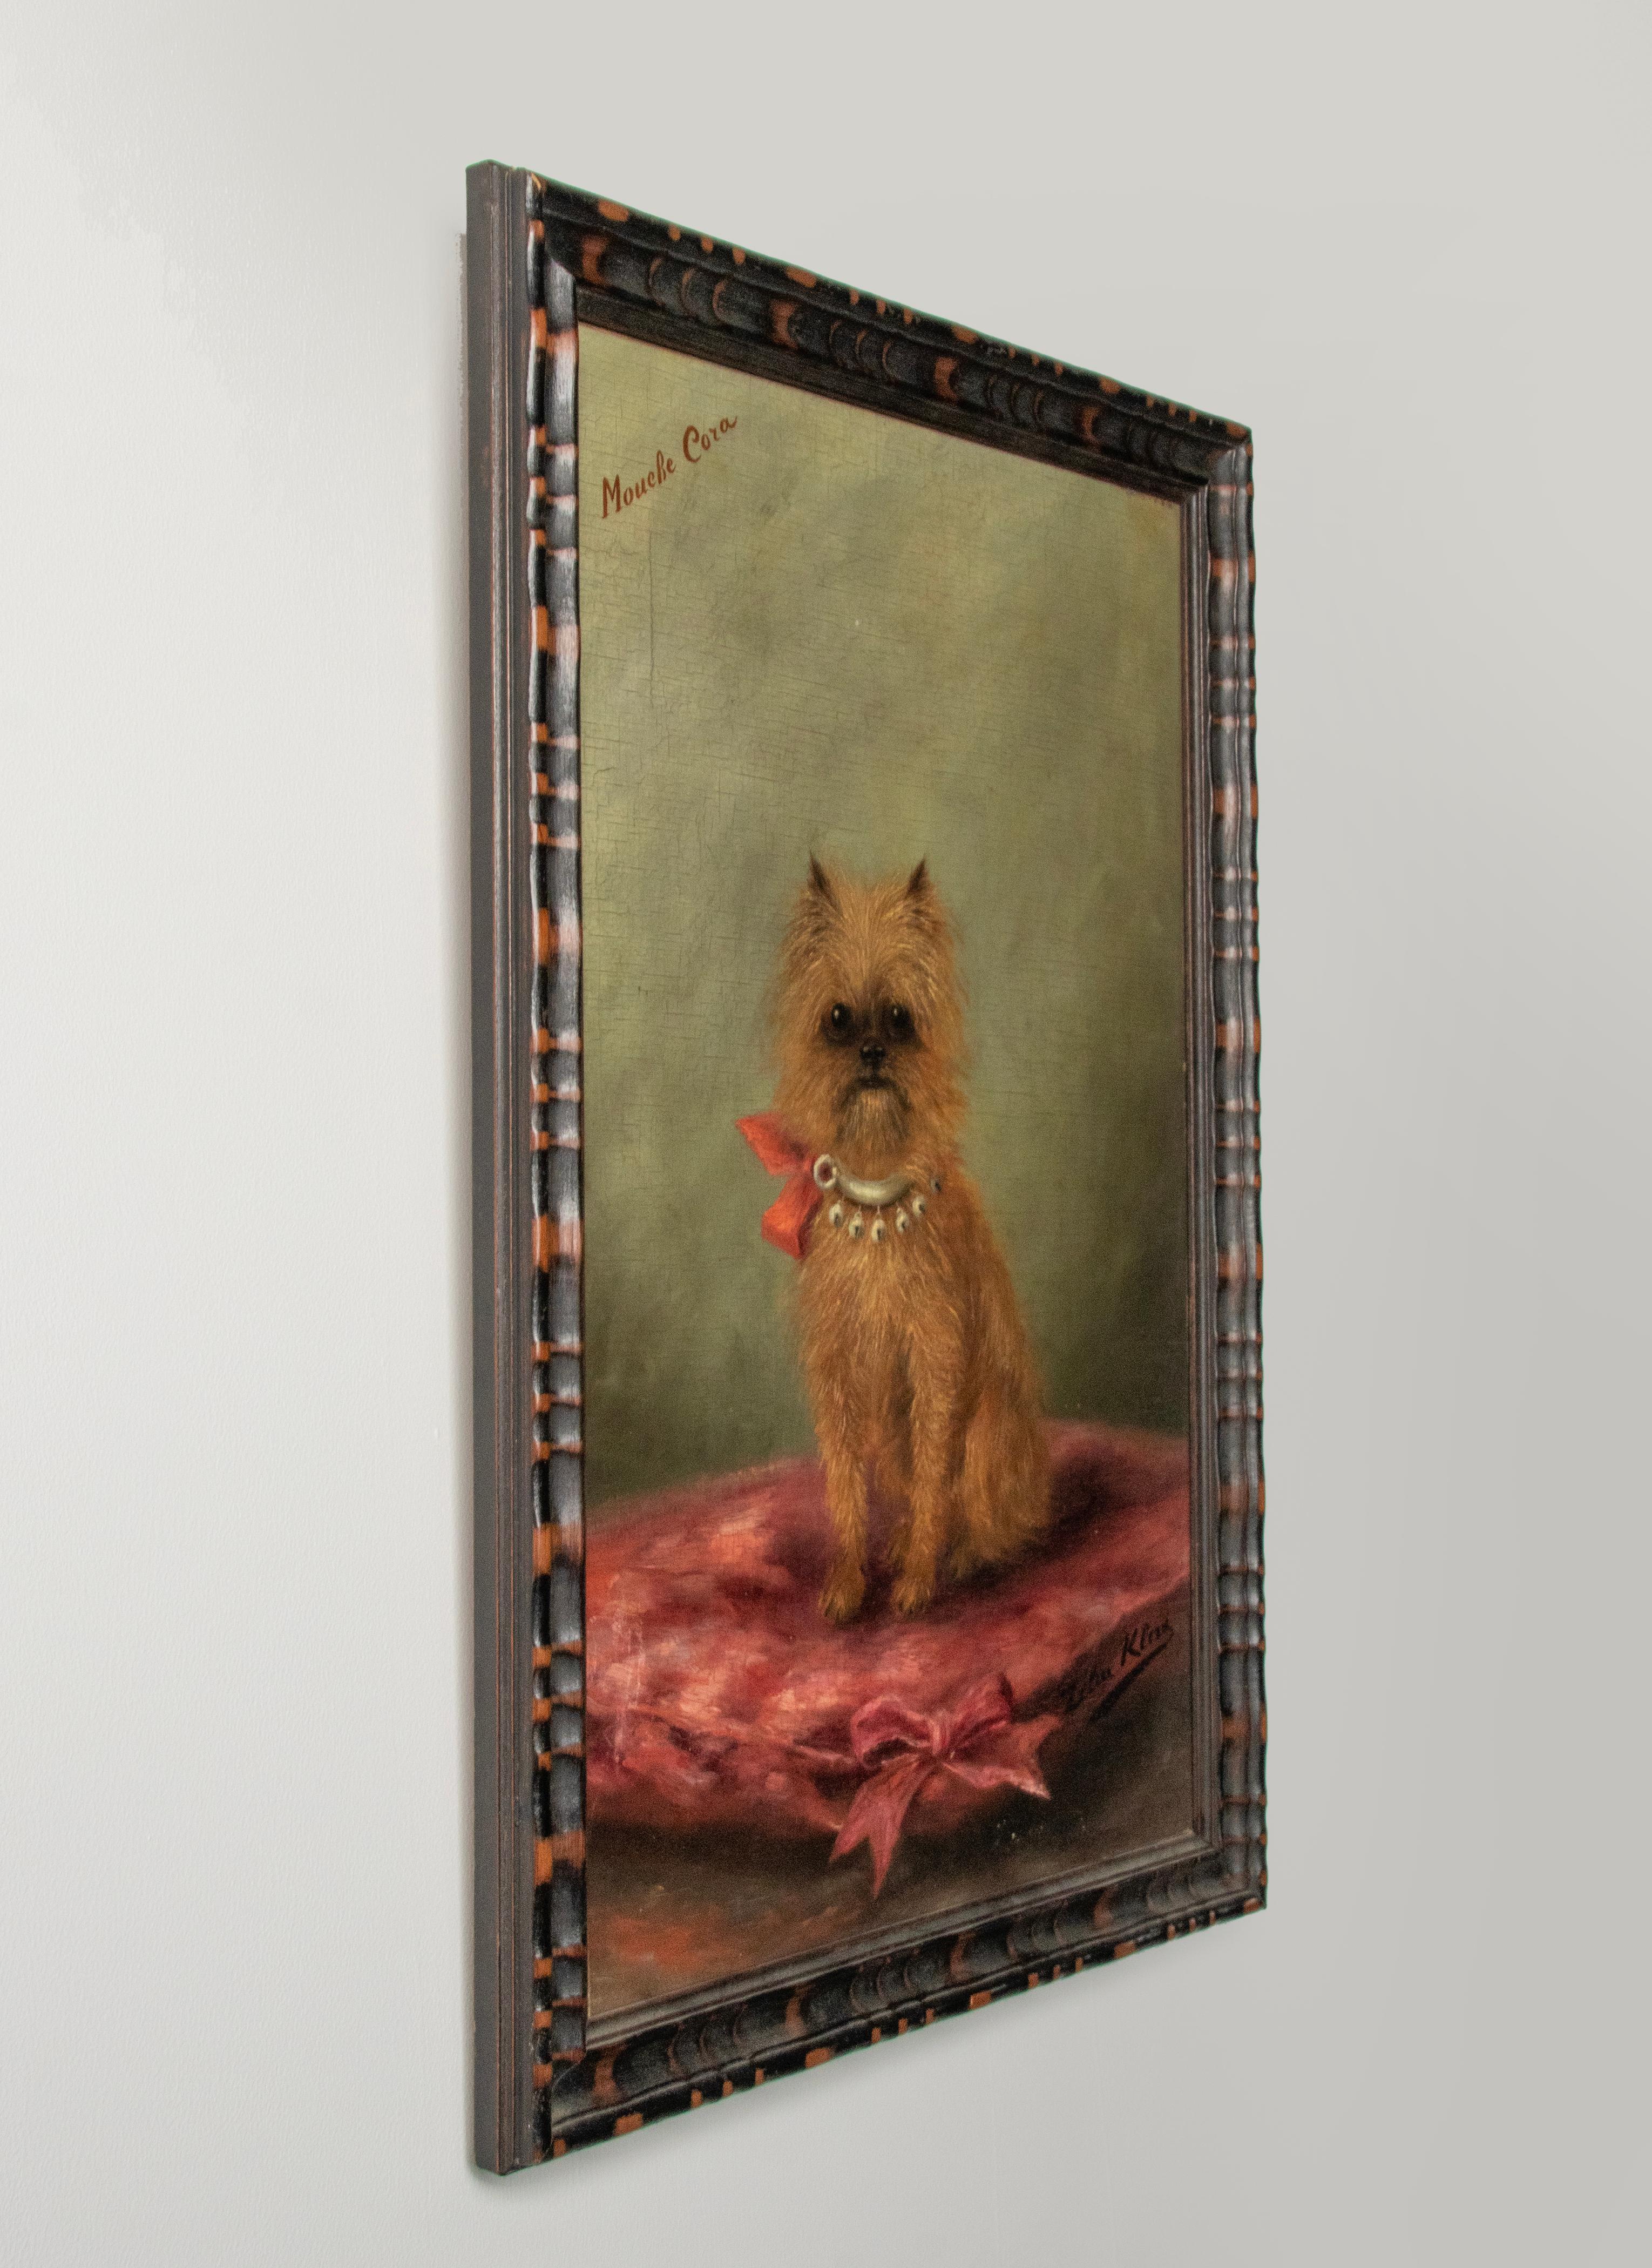 Canvas 19th Century Portrait of a Griffon Bruxellois Dog Named Mouche Cora, Zélia Klerx